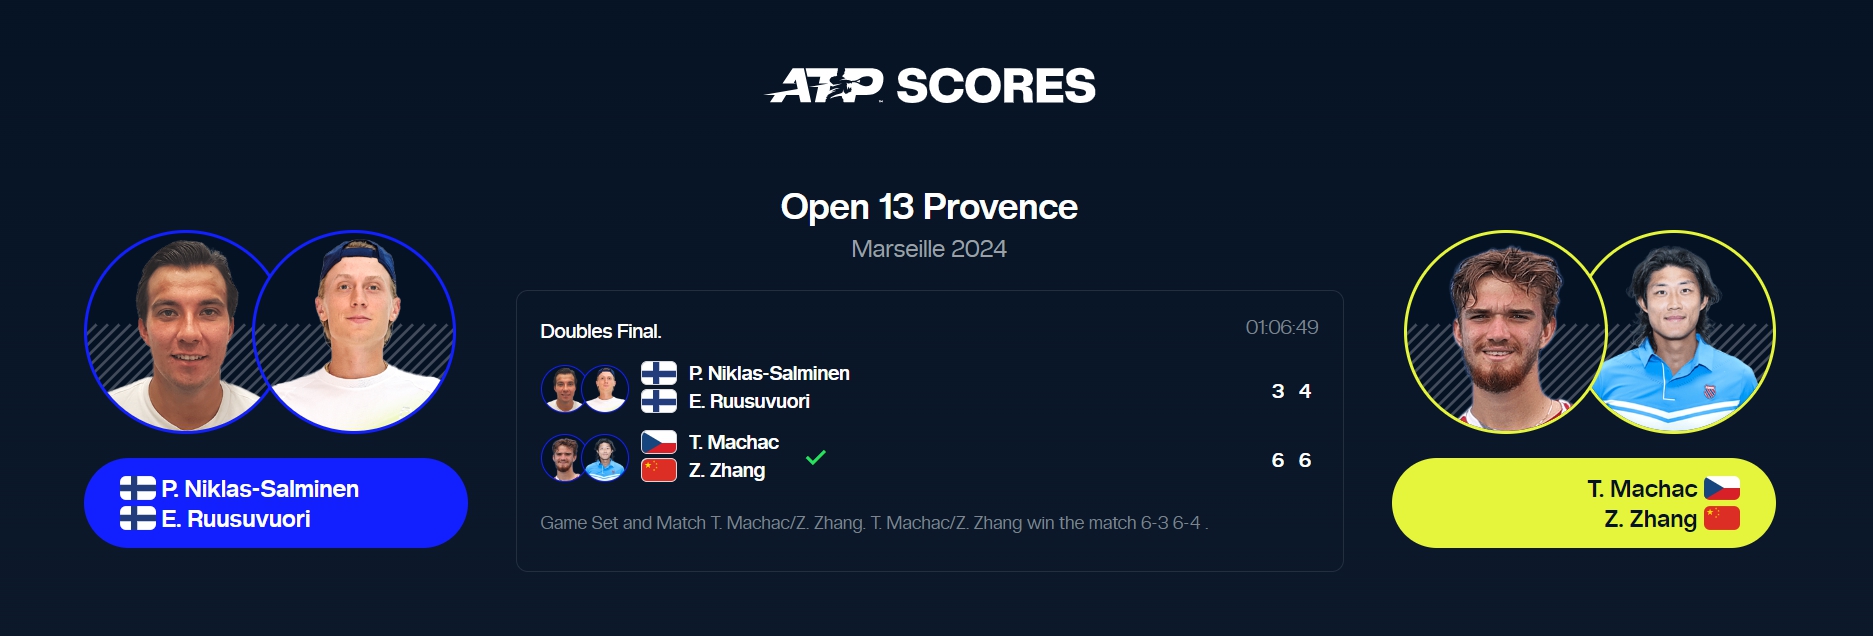 张之臻首获ATP巡回赛双打冠军 中国男网再迎里程碑